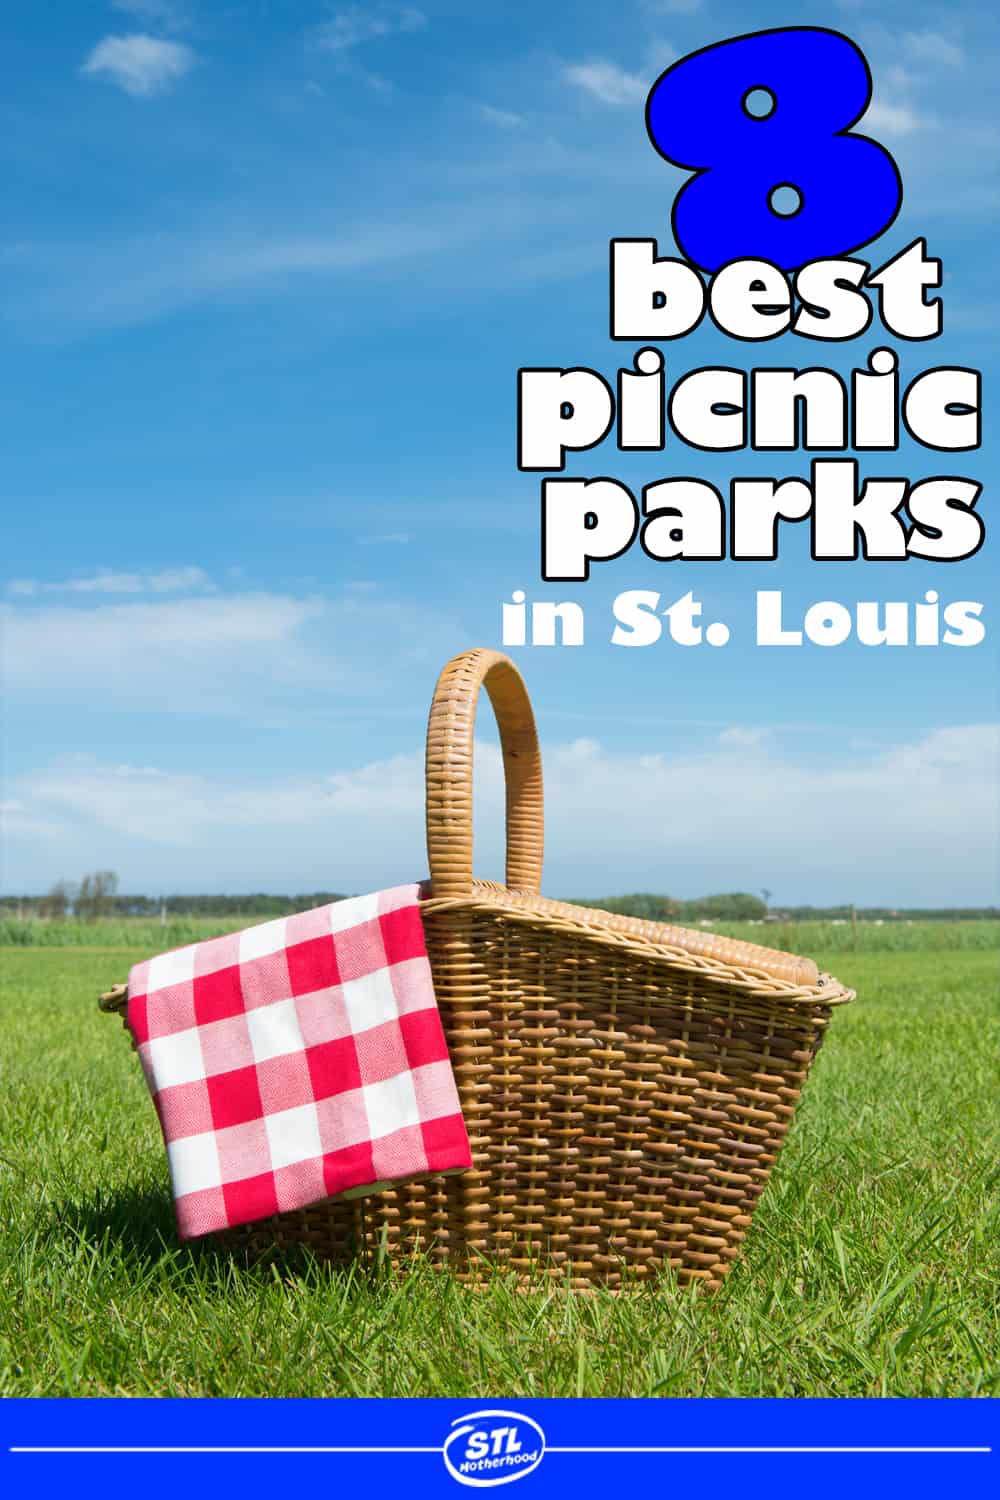 picnic basket on a grassy field